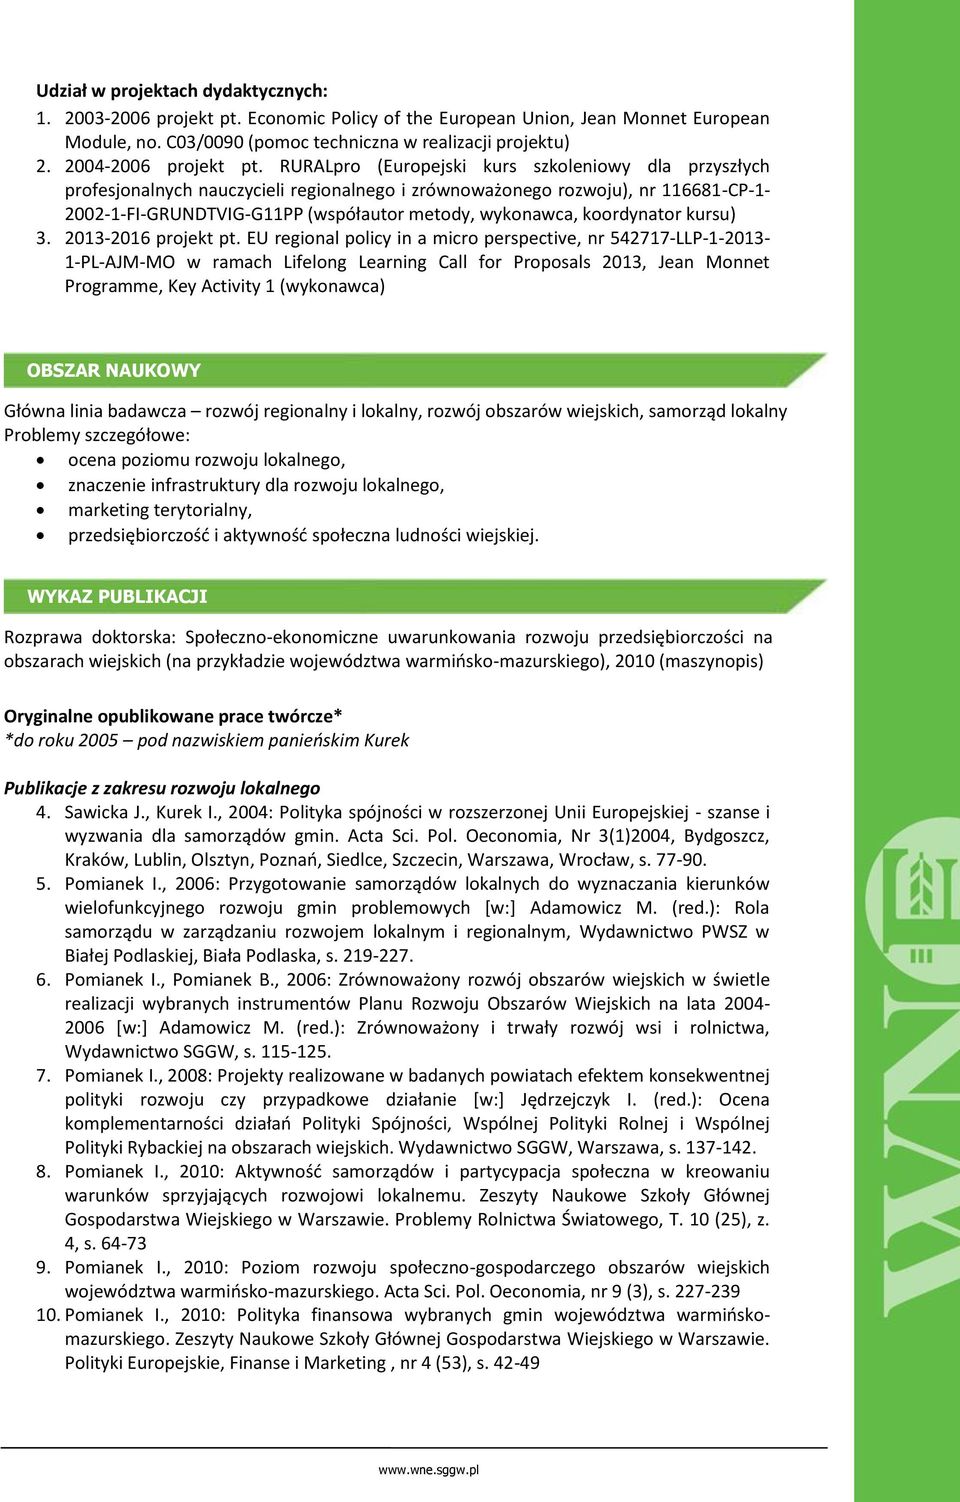 RURALpro (Europejski kurs szkoleniowy dla przyszłych profesjonalnych nauczycieli regionalnego i zrównoważonego rozwoju), nr 116681-CP-1-2002-1-FI-GRUNDTVIG-G11PP (współautor metody, wykonawca,